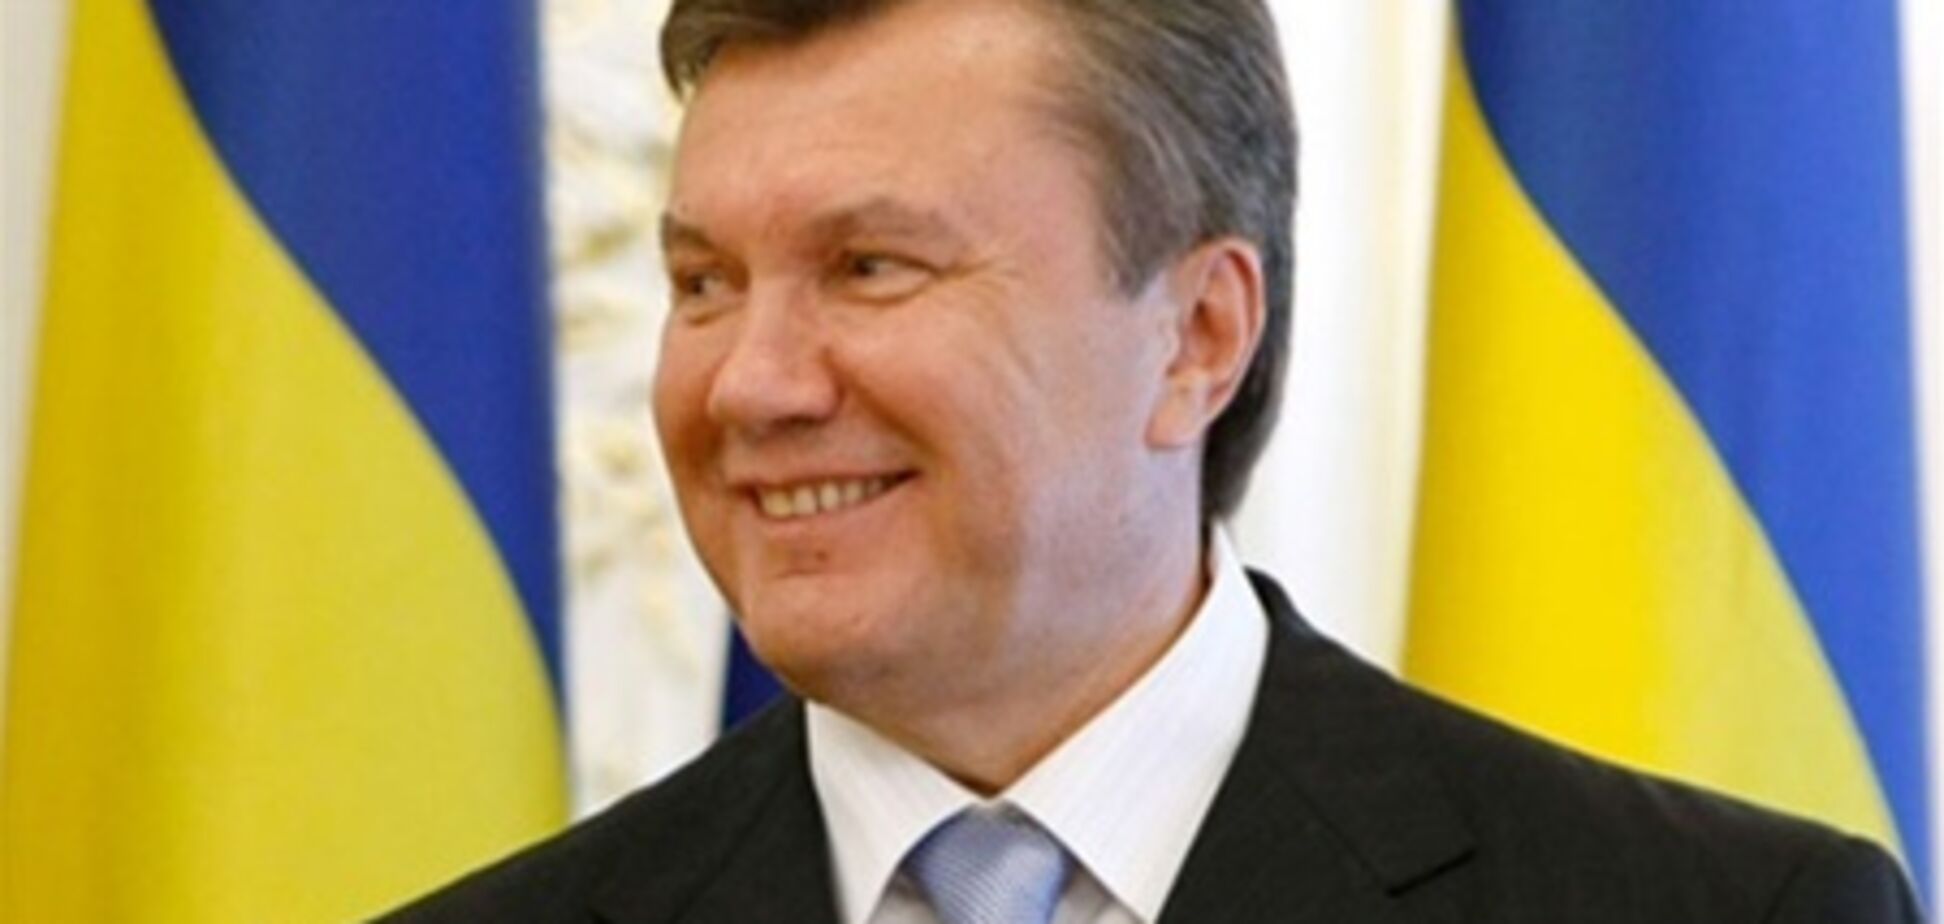 Теледиалог Януковича будет длиться около трех часов